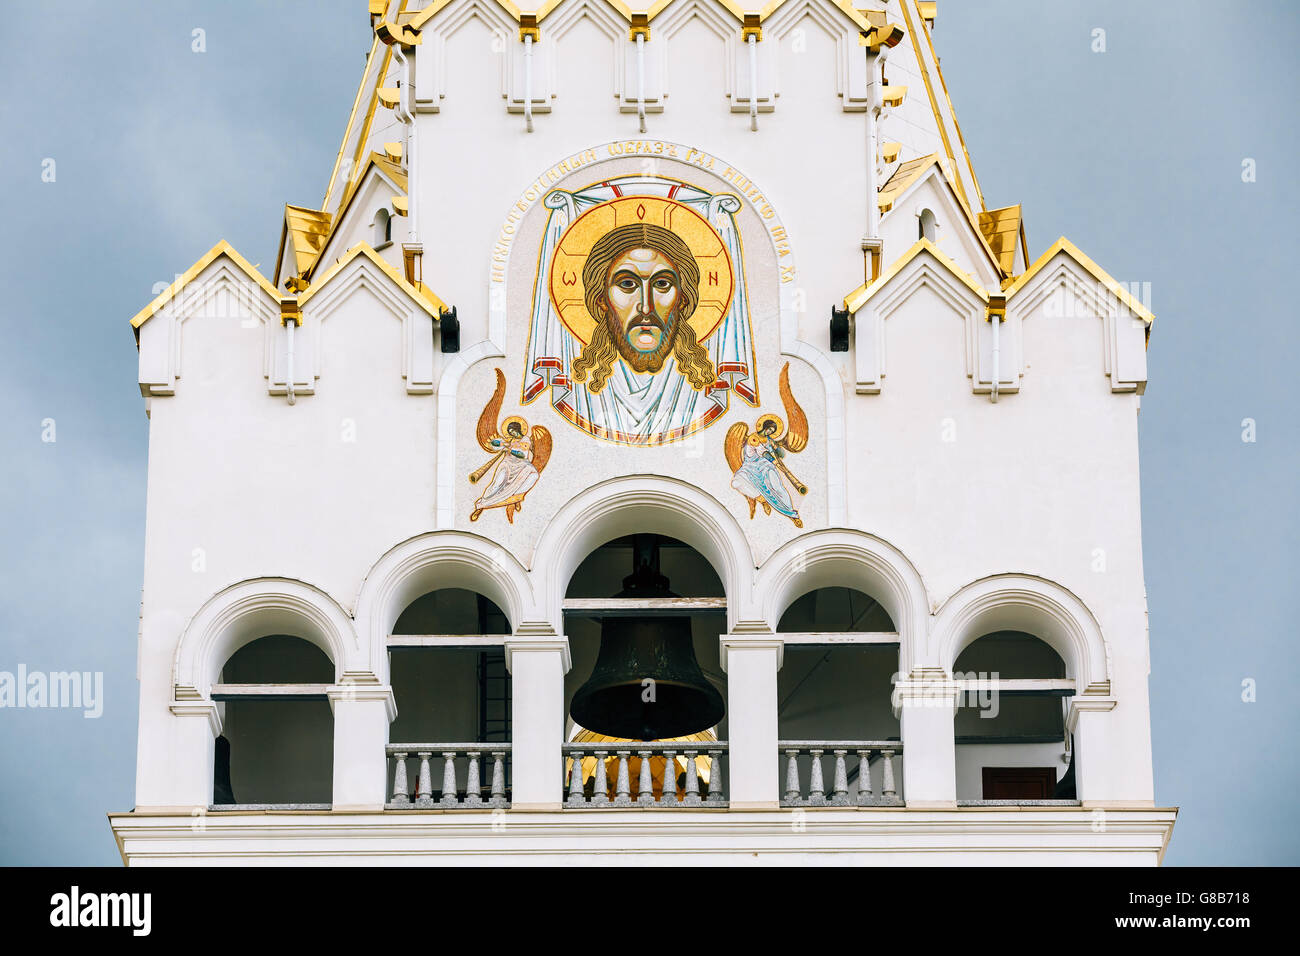 All Saints Church In Minsk, Belarus. Frescoed Wall Of Temple. Stock Photo